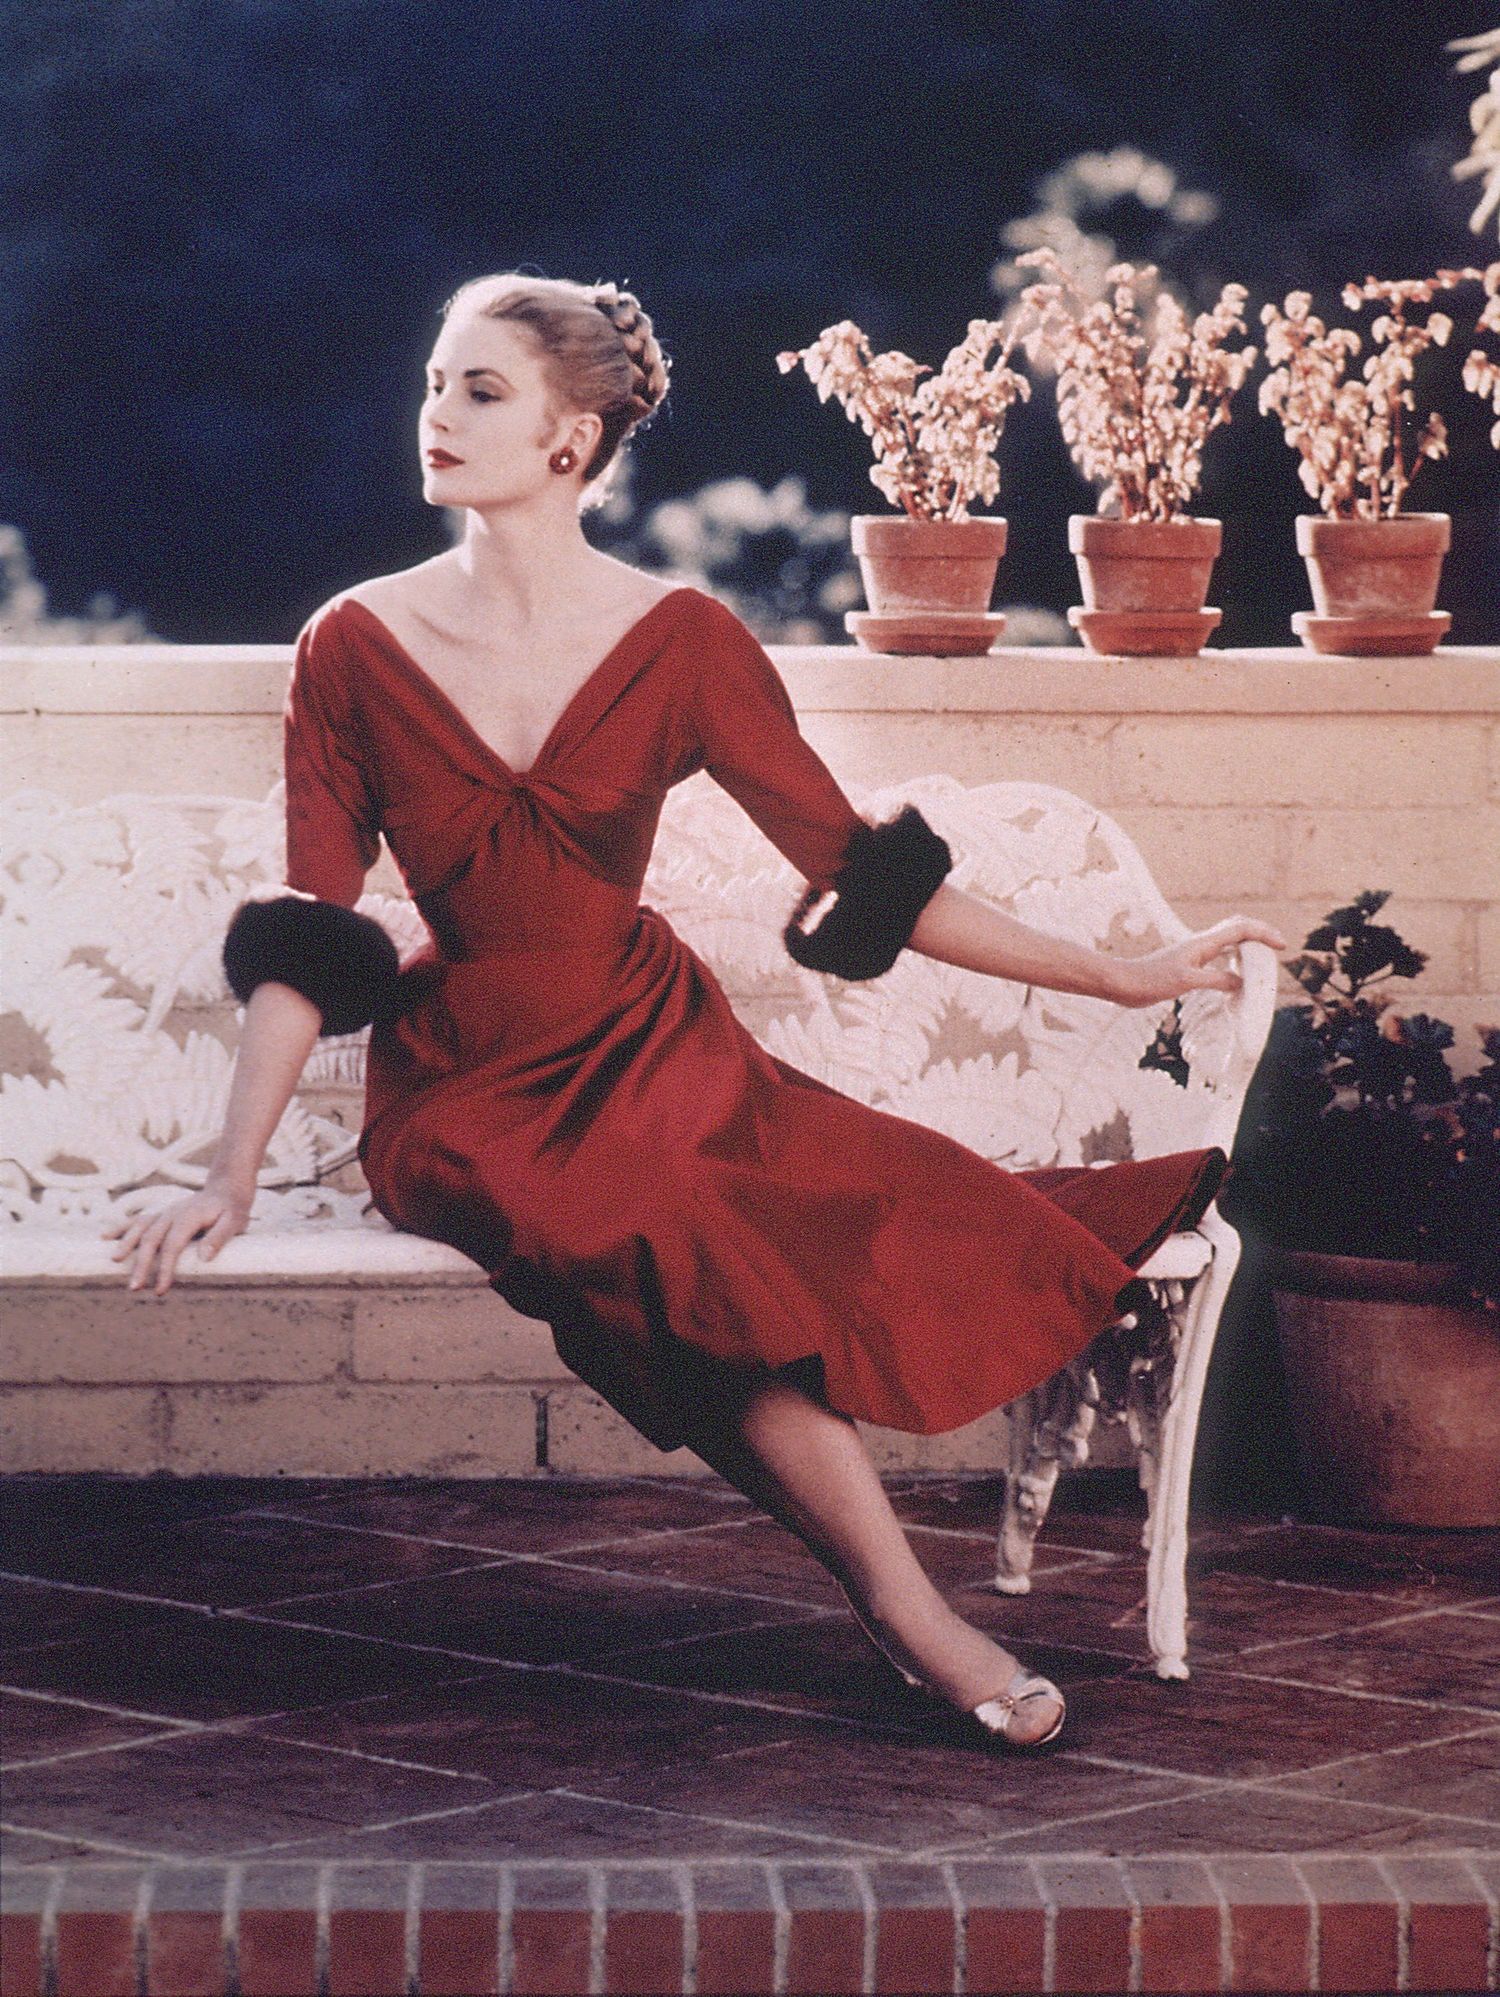 Potret Ikonik Grace Kelly, Aktris yang Jadi Inspirasi Nama Tas Hermès